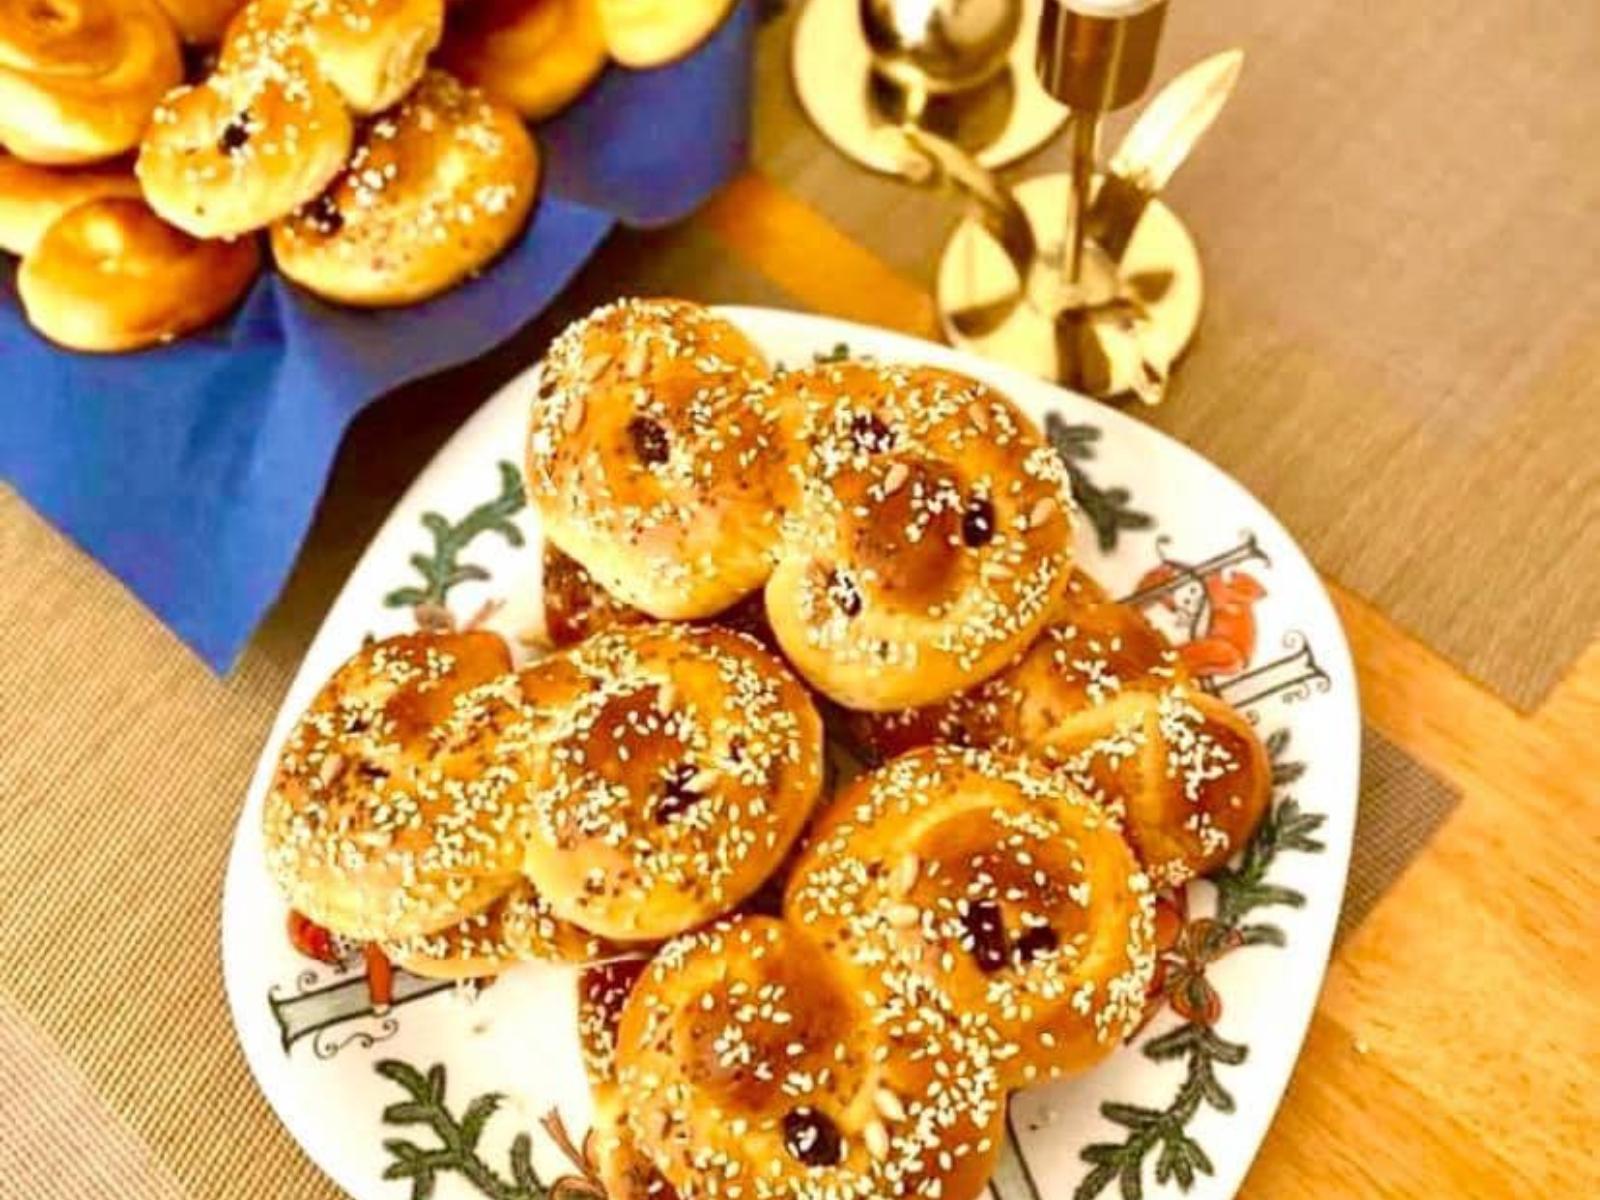 Χριστουγεννιάτικα-Σουηδικά ψωμάκια-Lucia-Lussekats-